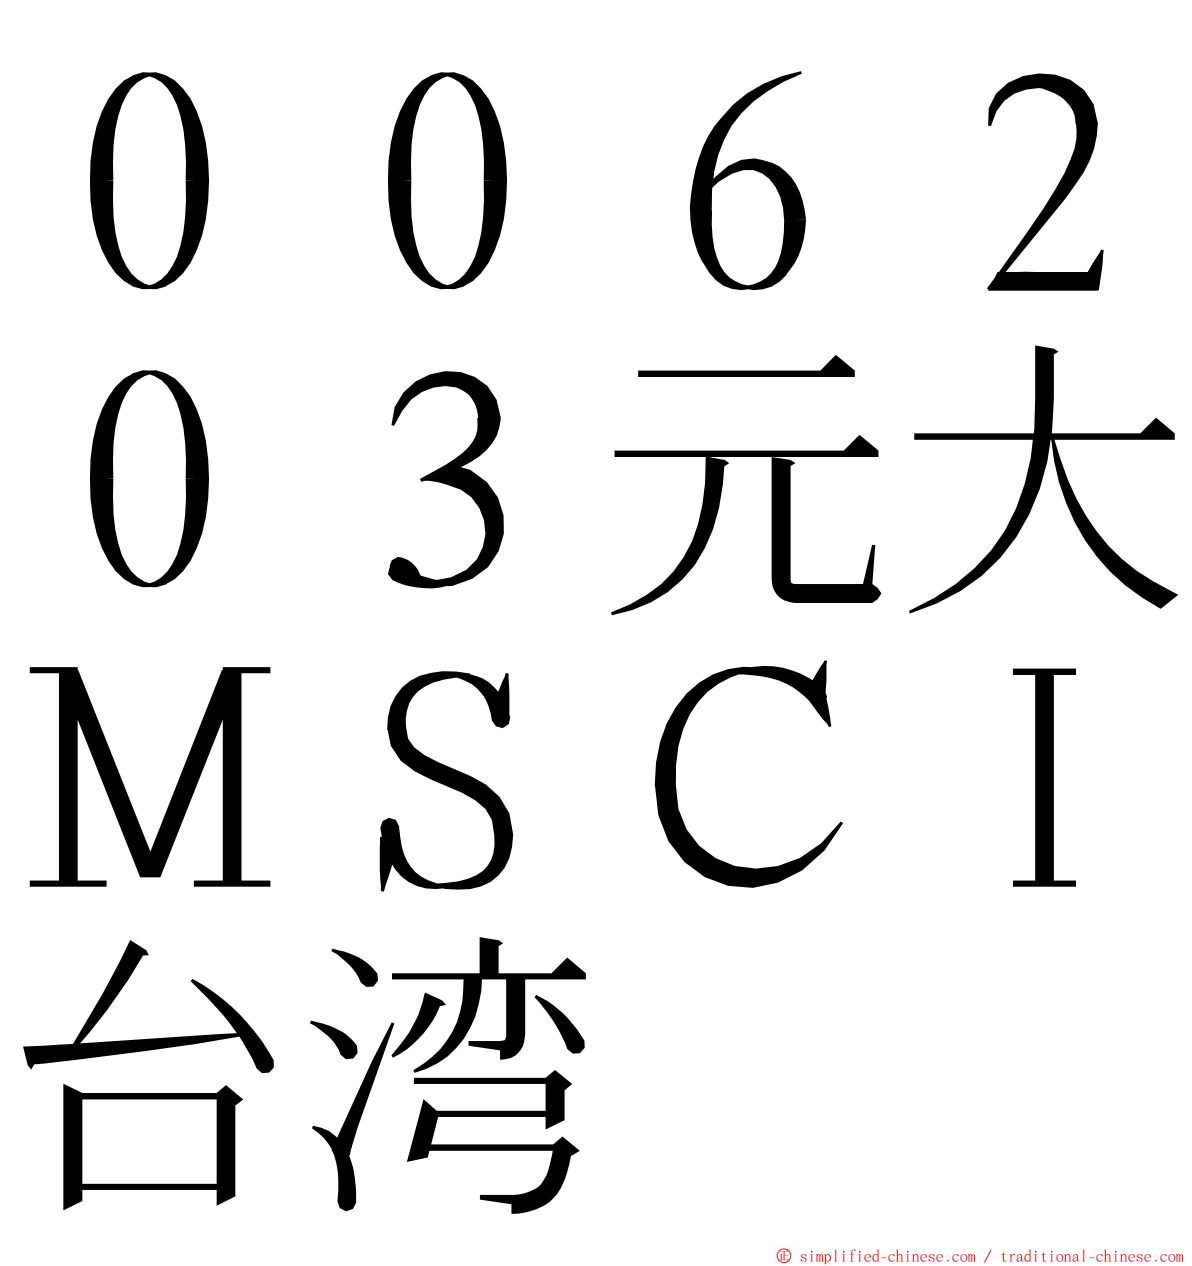 ００６２０３元大ＭＳＣＩ台湾 ming font